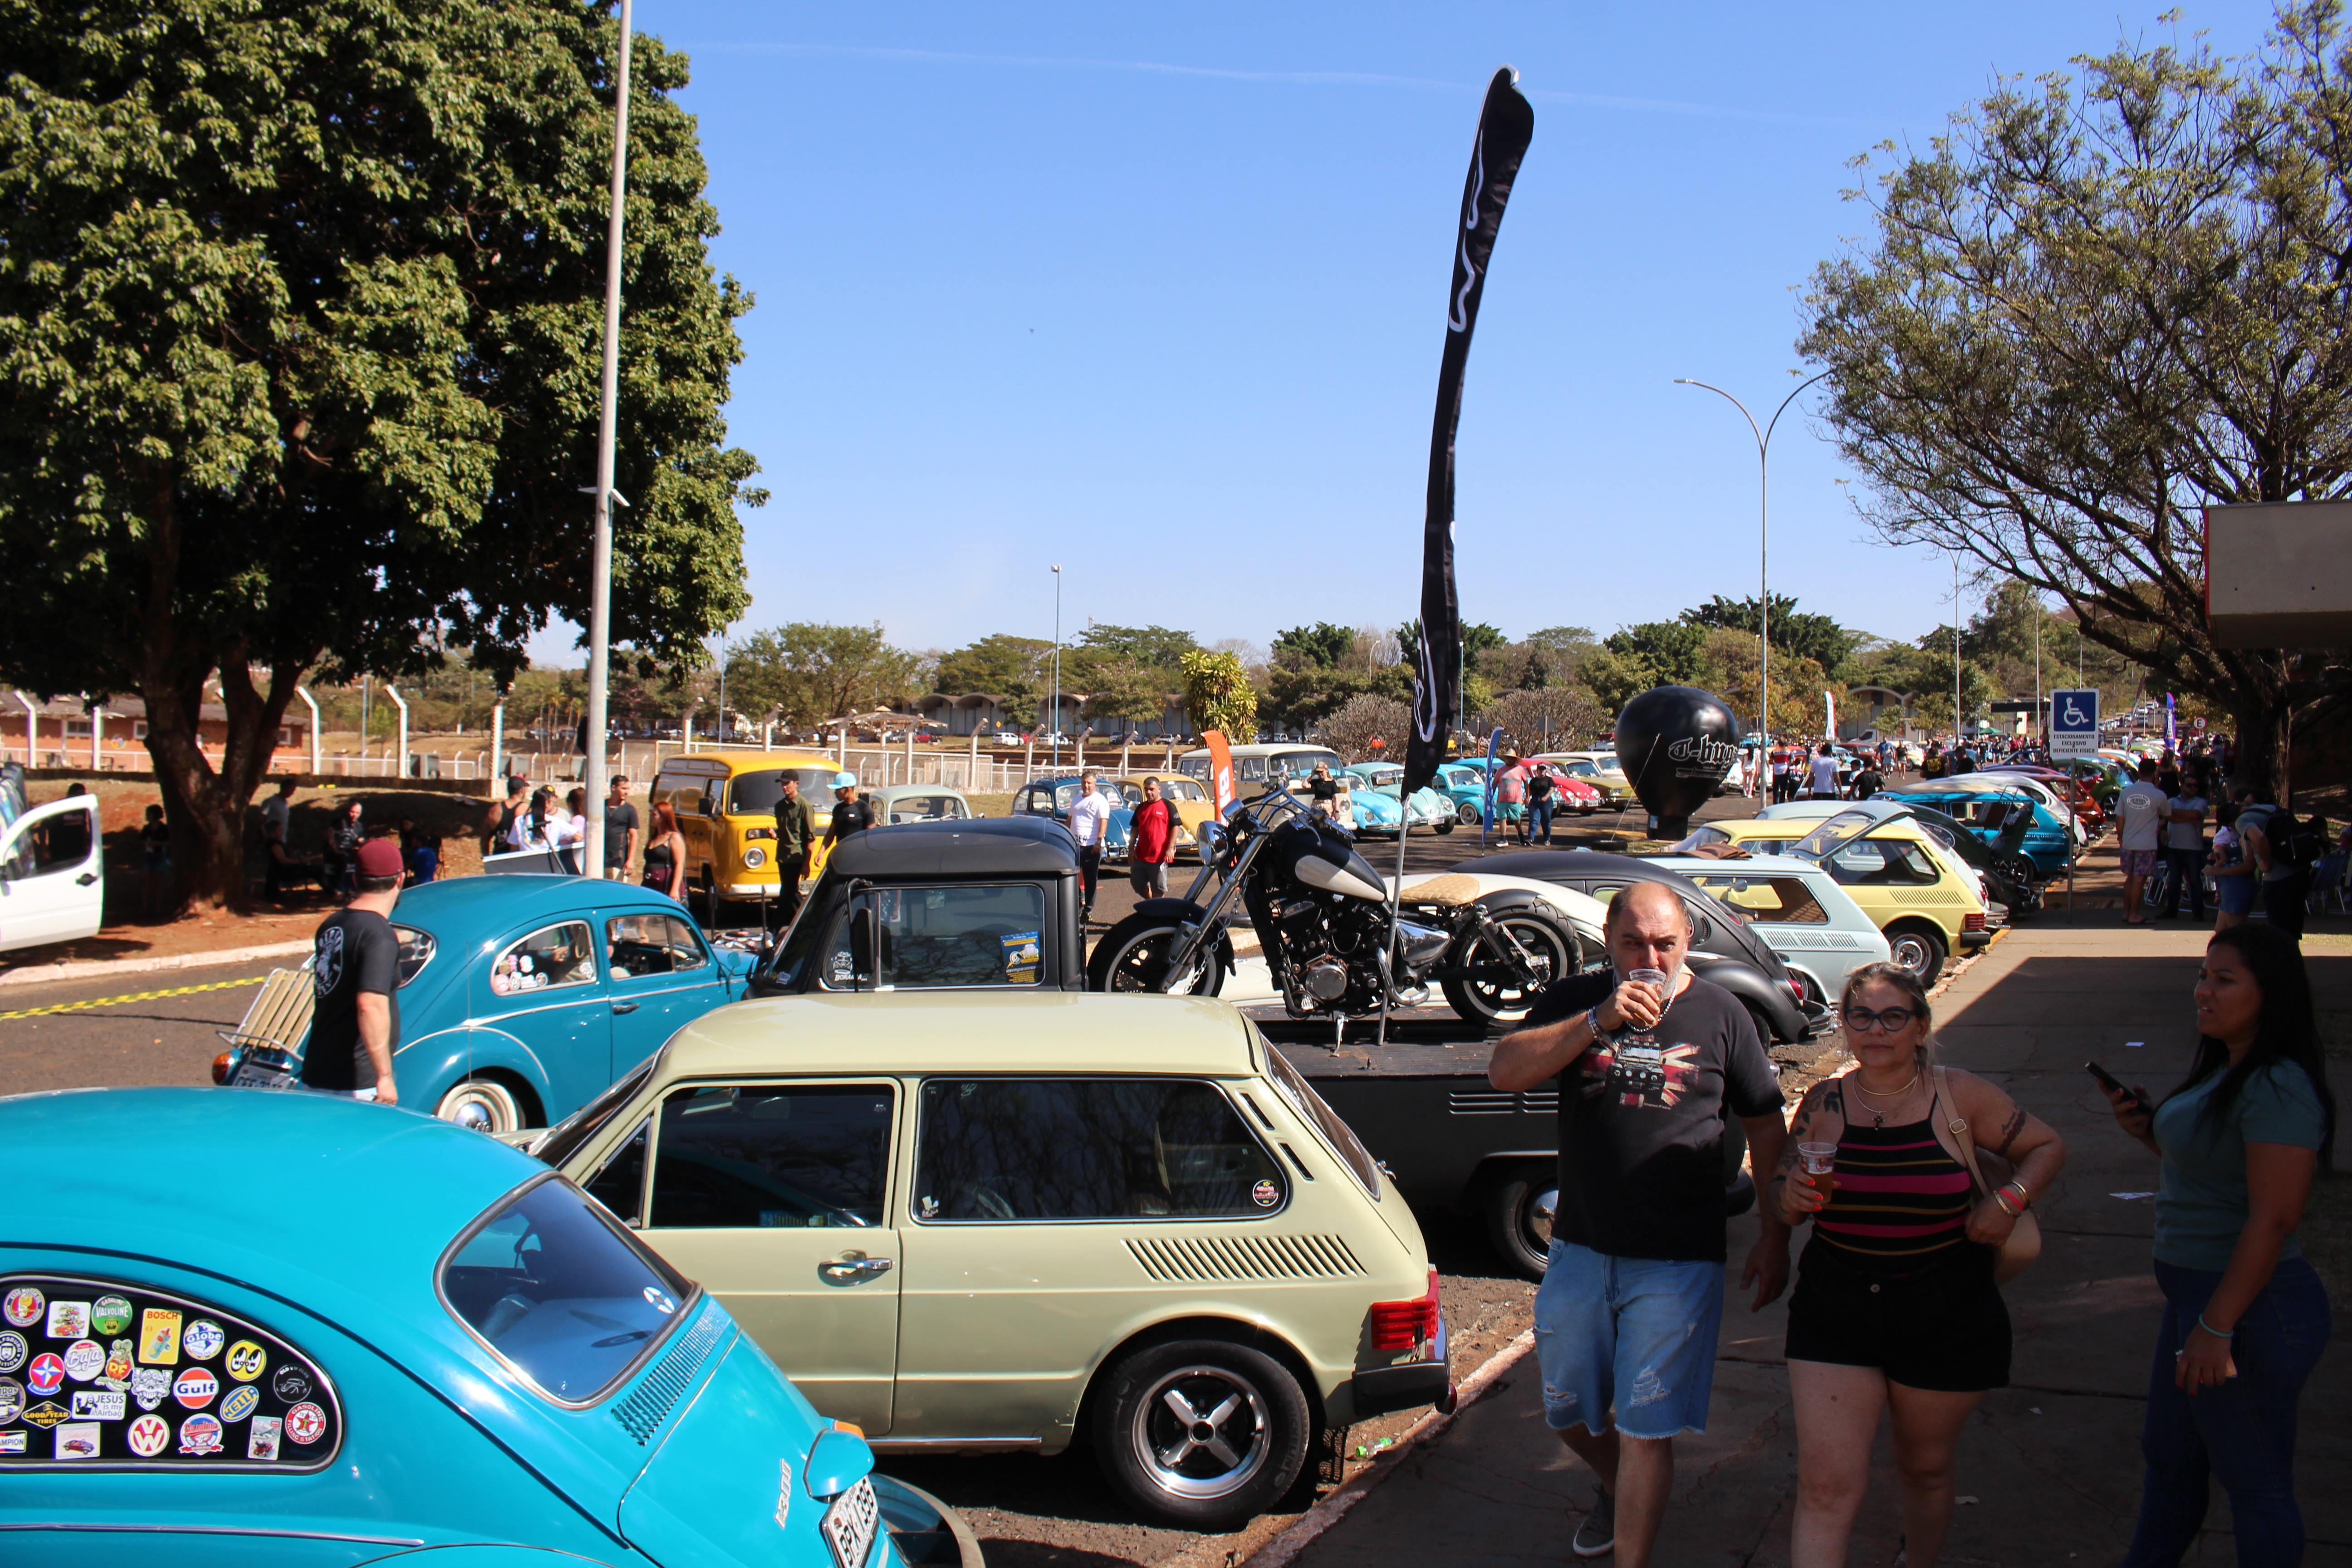 Modelos de carros antigos sendo expostos no California Volks Brothers com várias pessoas ao redor. 